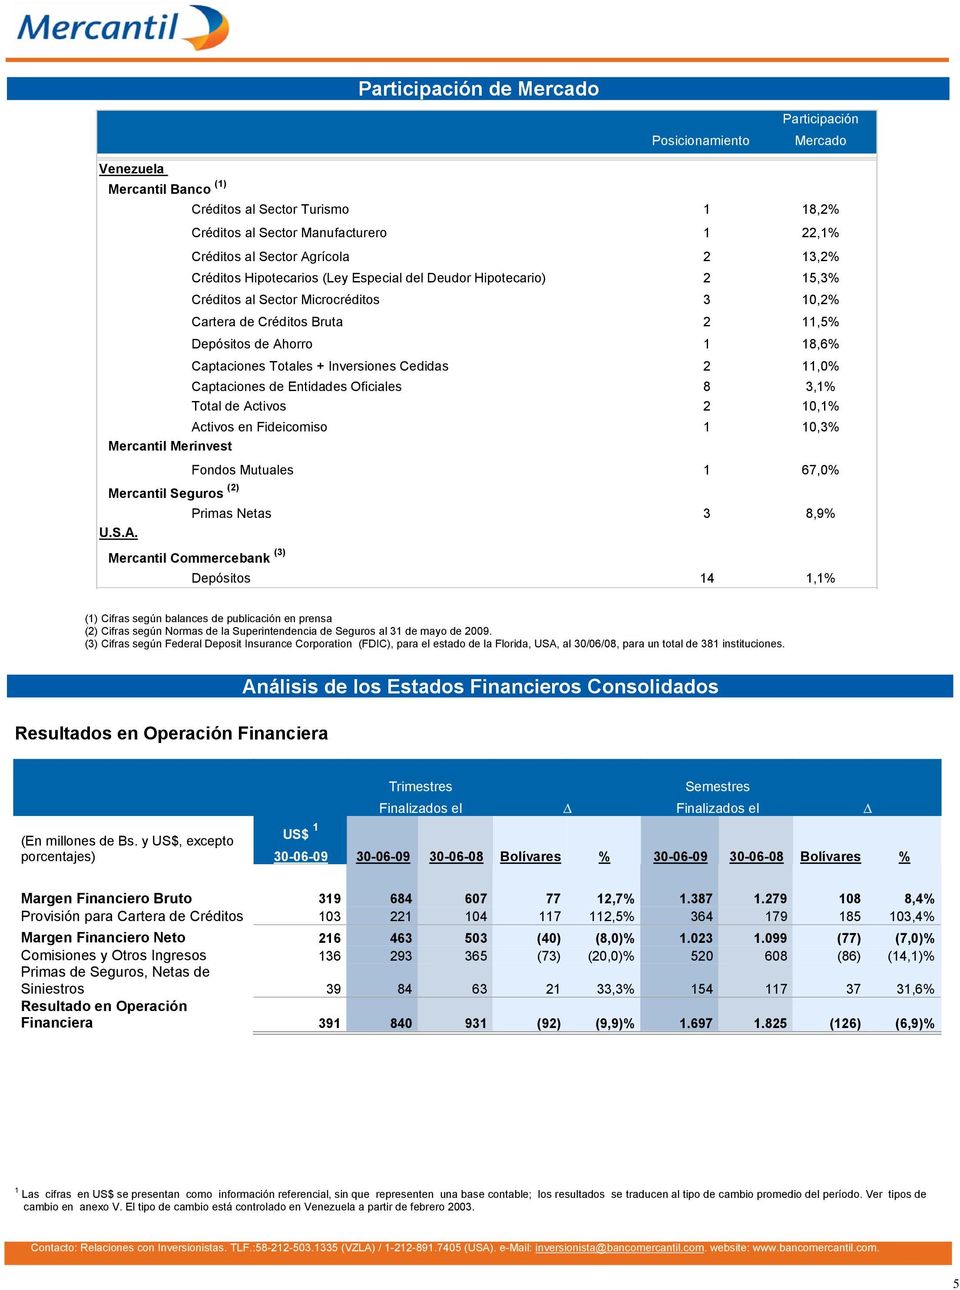 Inversiones Cedidas 2 11,0% Captaciones de Entidades Oficiales 8 3,1% Total de Ac